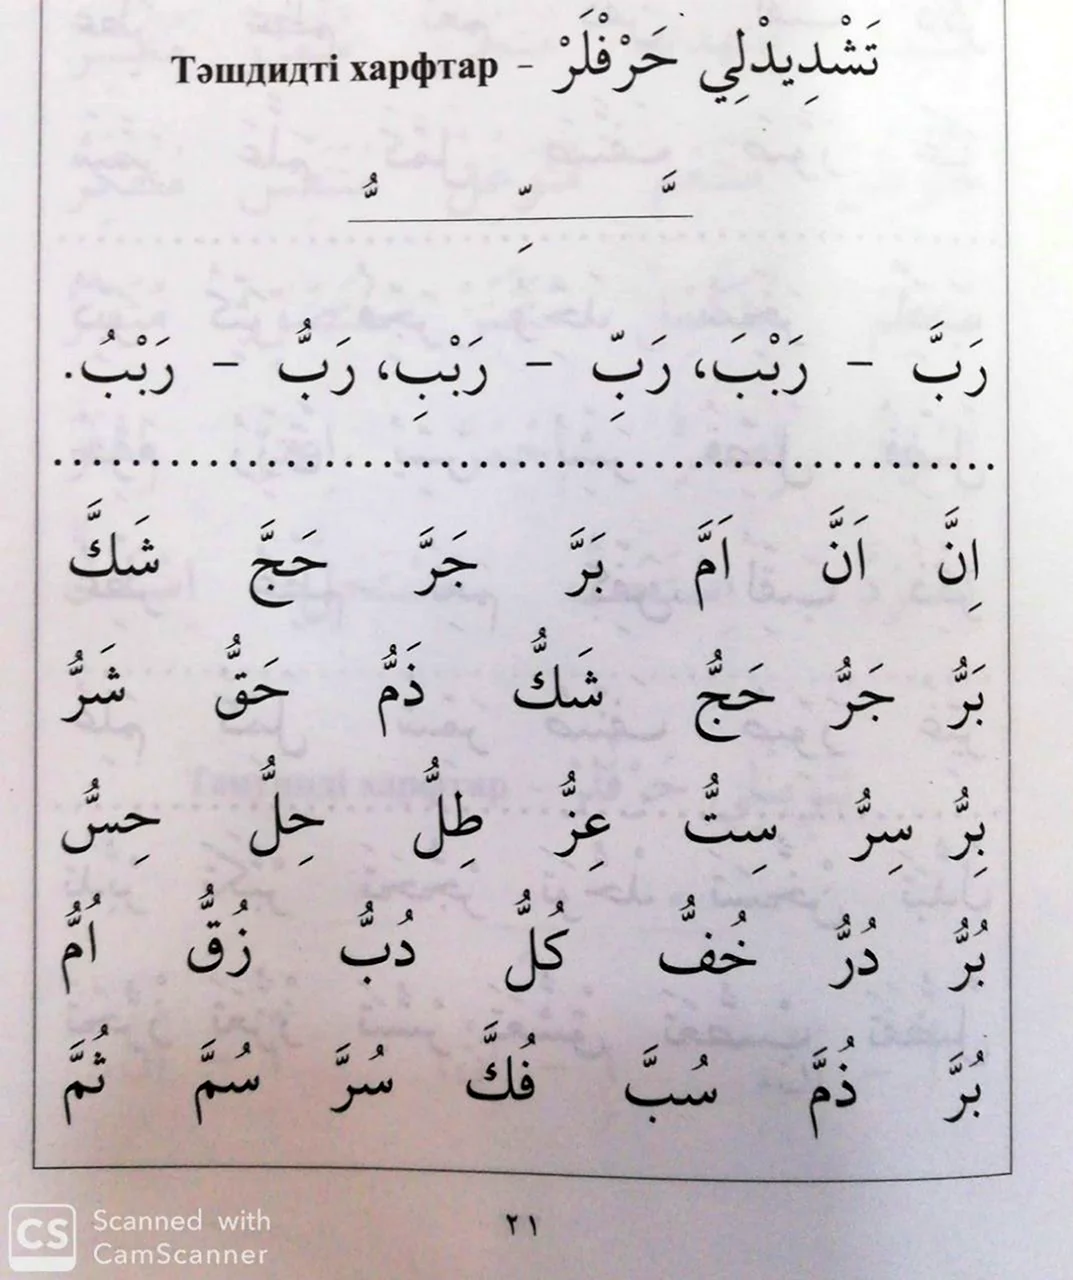 Ташдид в арабском языке